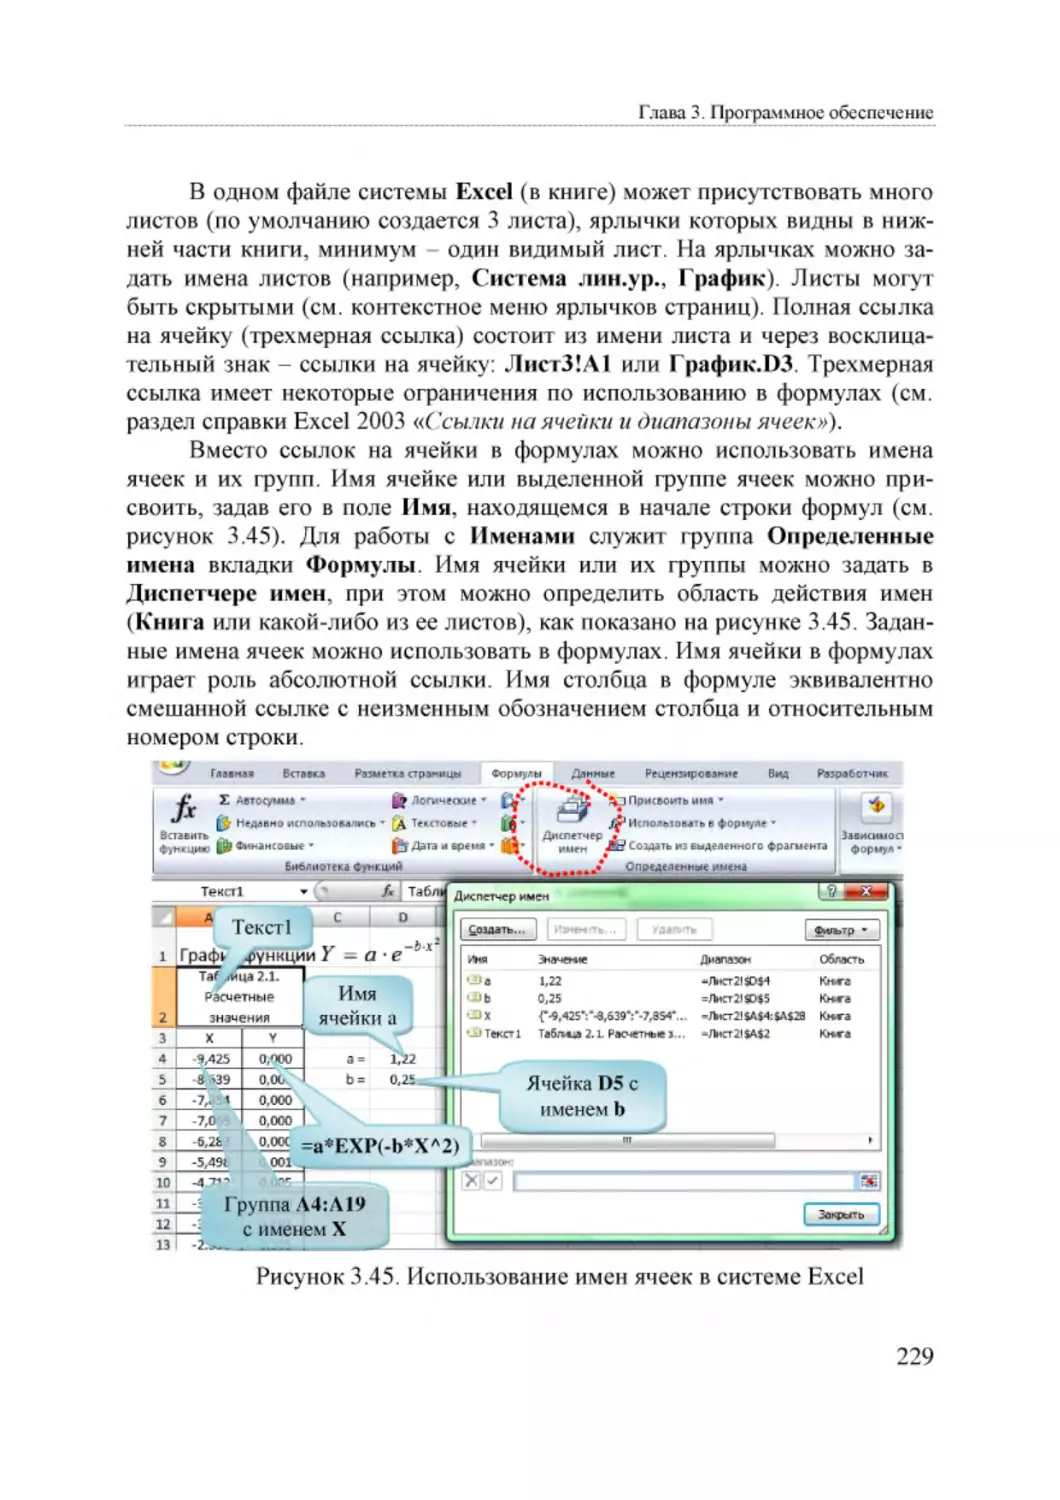 Informatika_Uchebnik_dlya_vuzov_2010 229